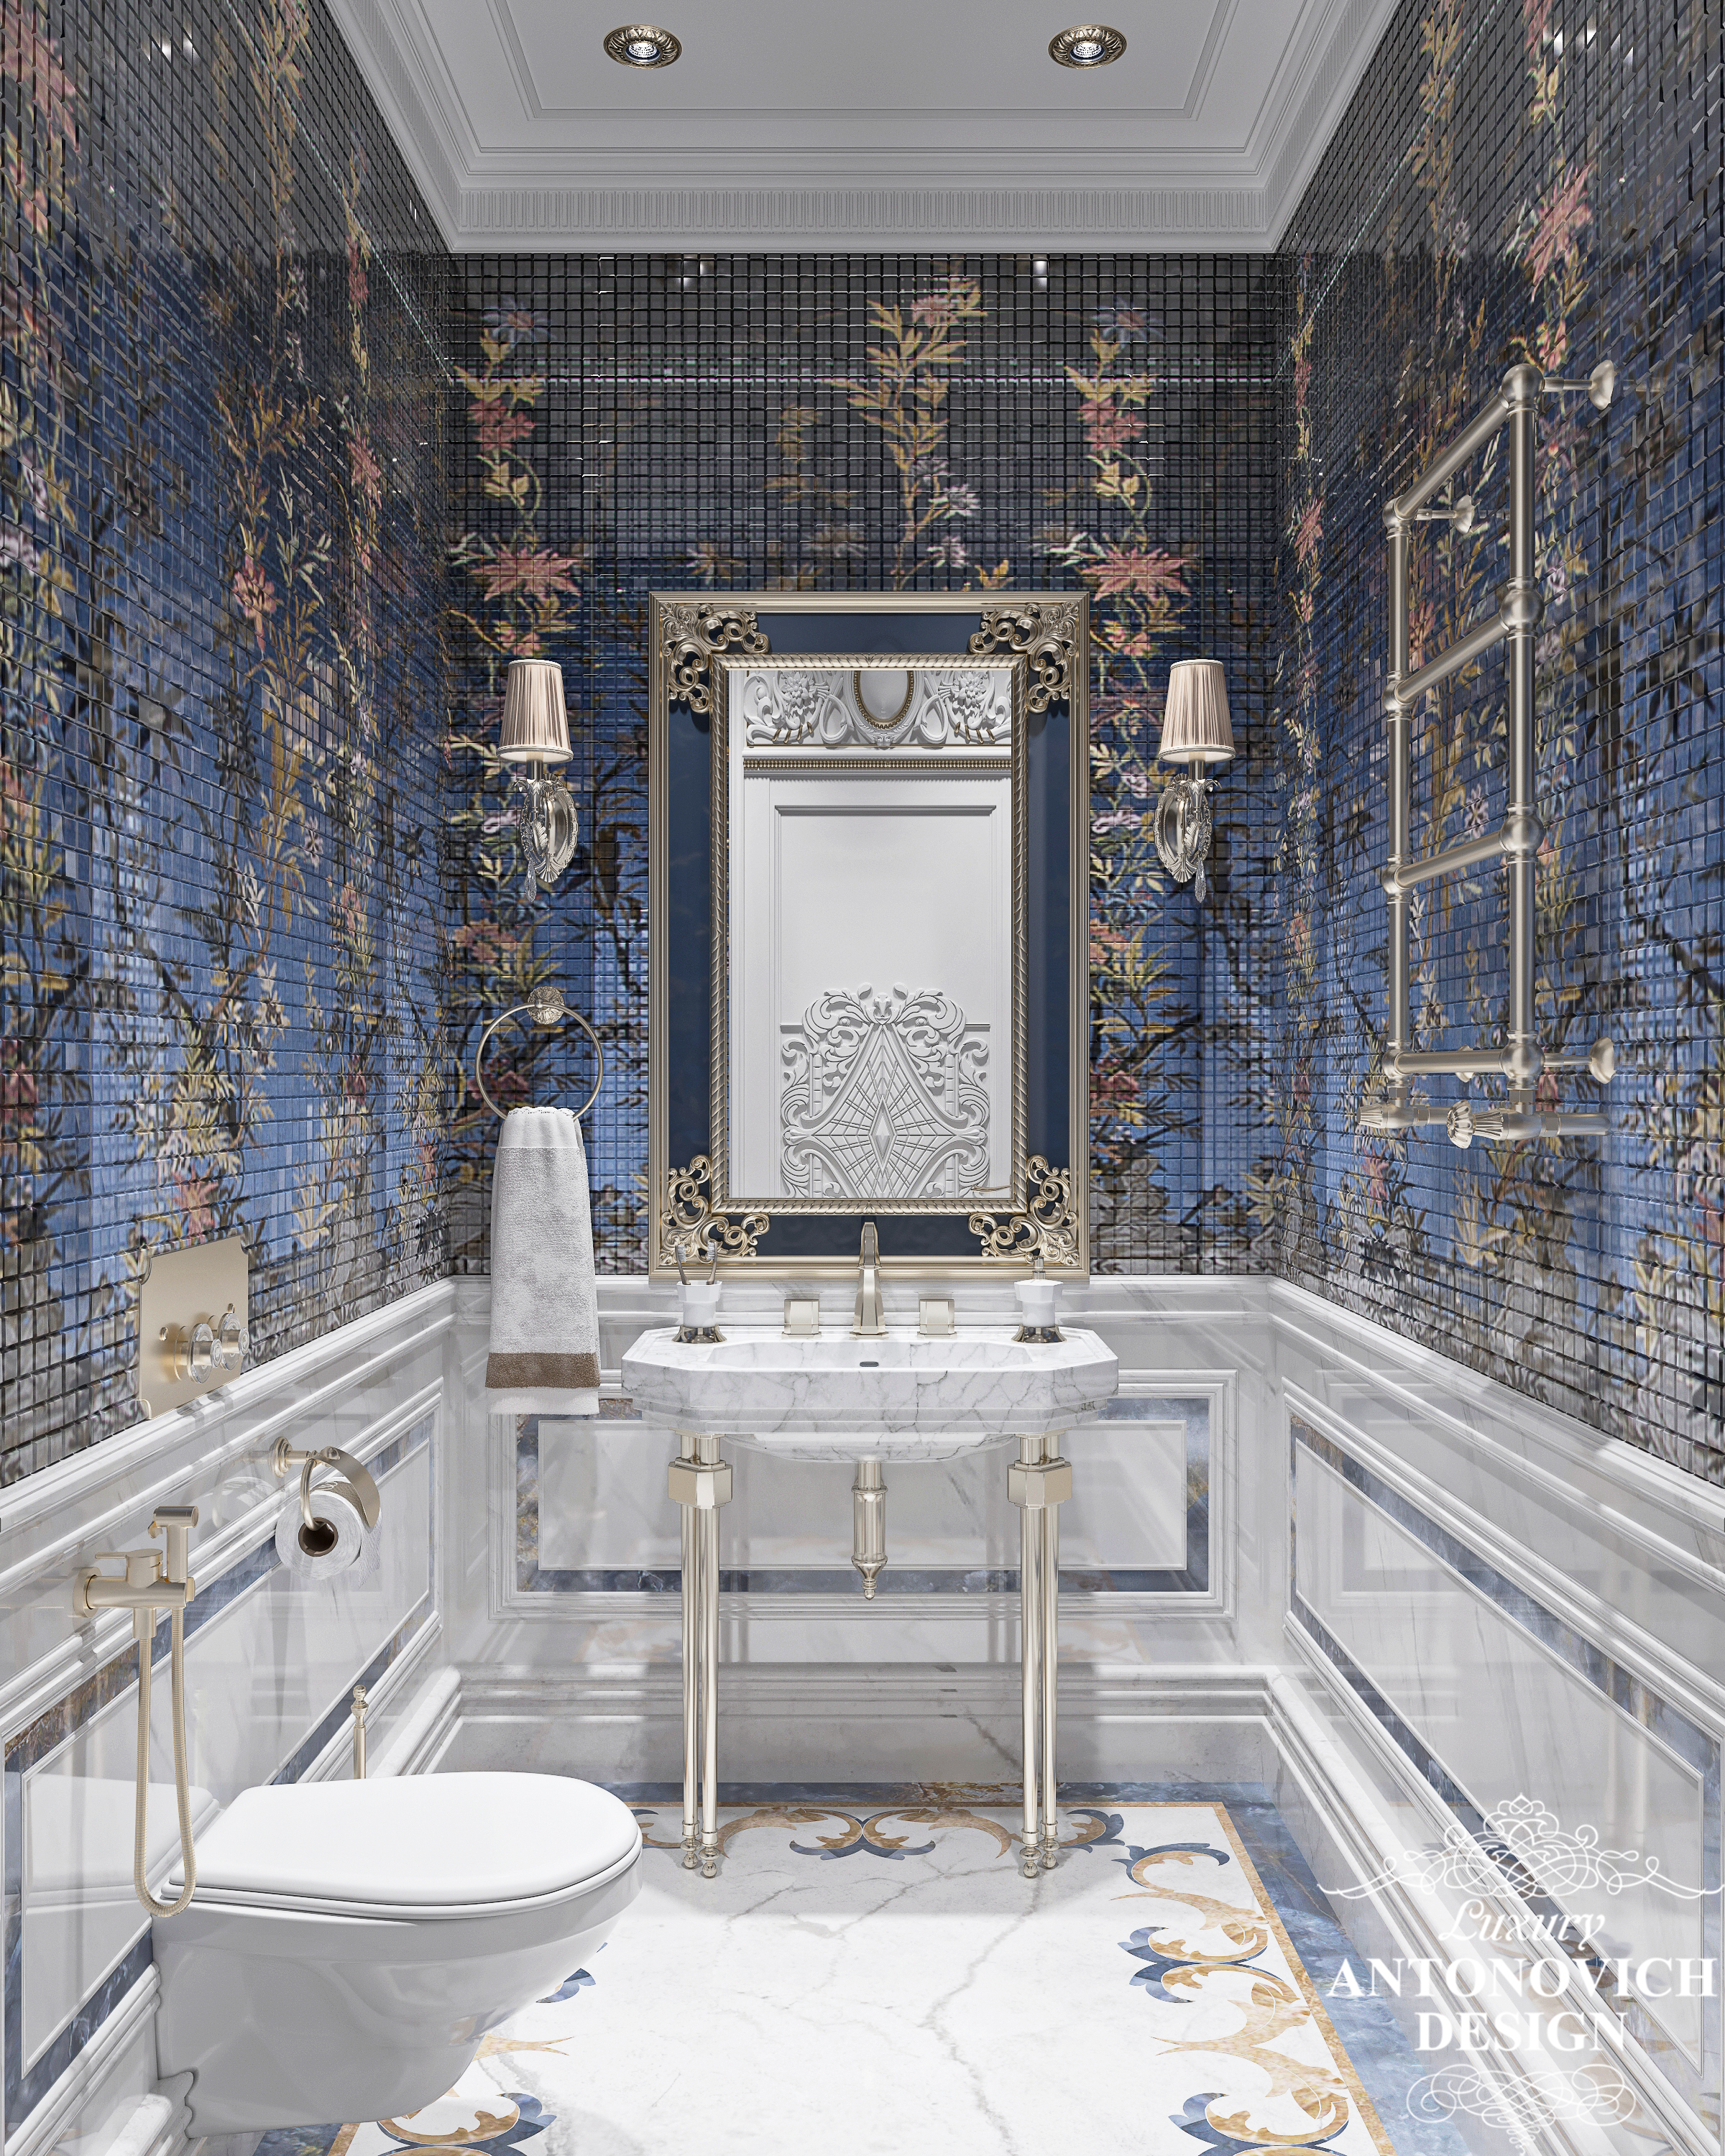 Дизайн ванной комнаты с мозаикой. Советы по выбору материала и возможности применения